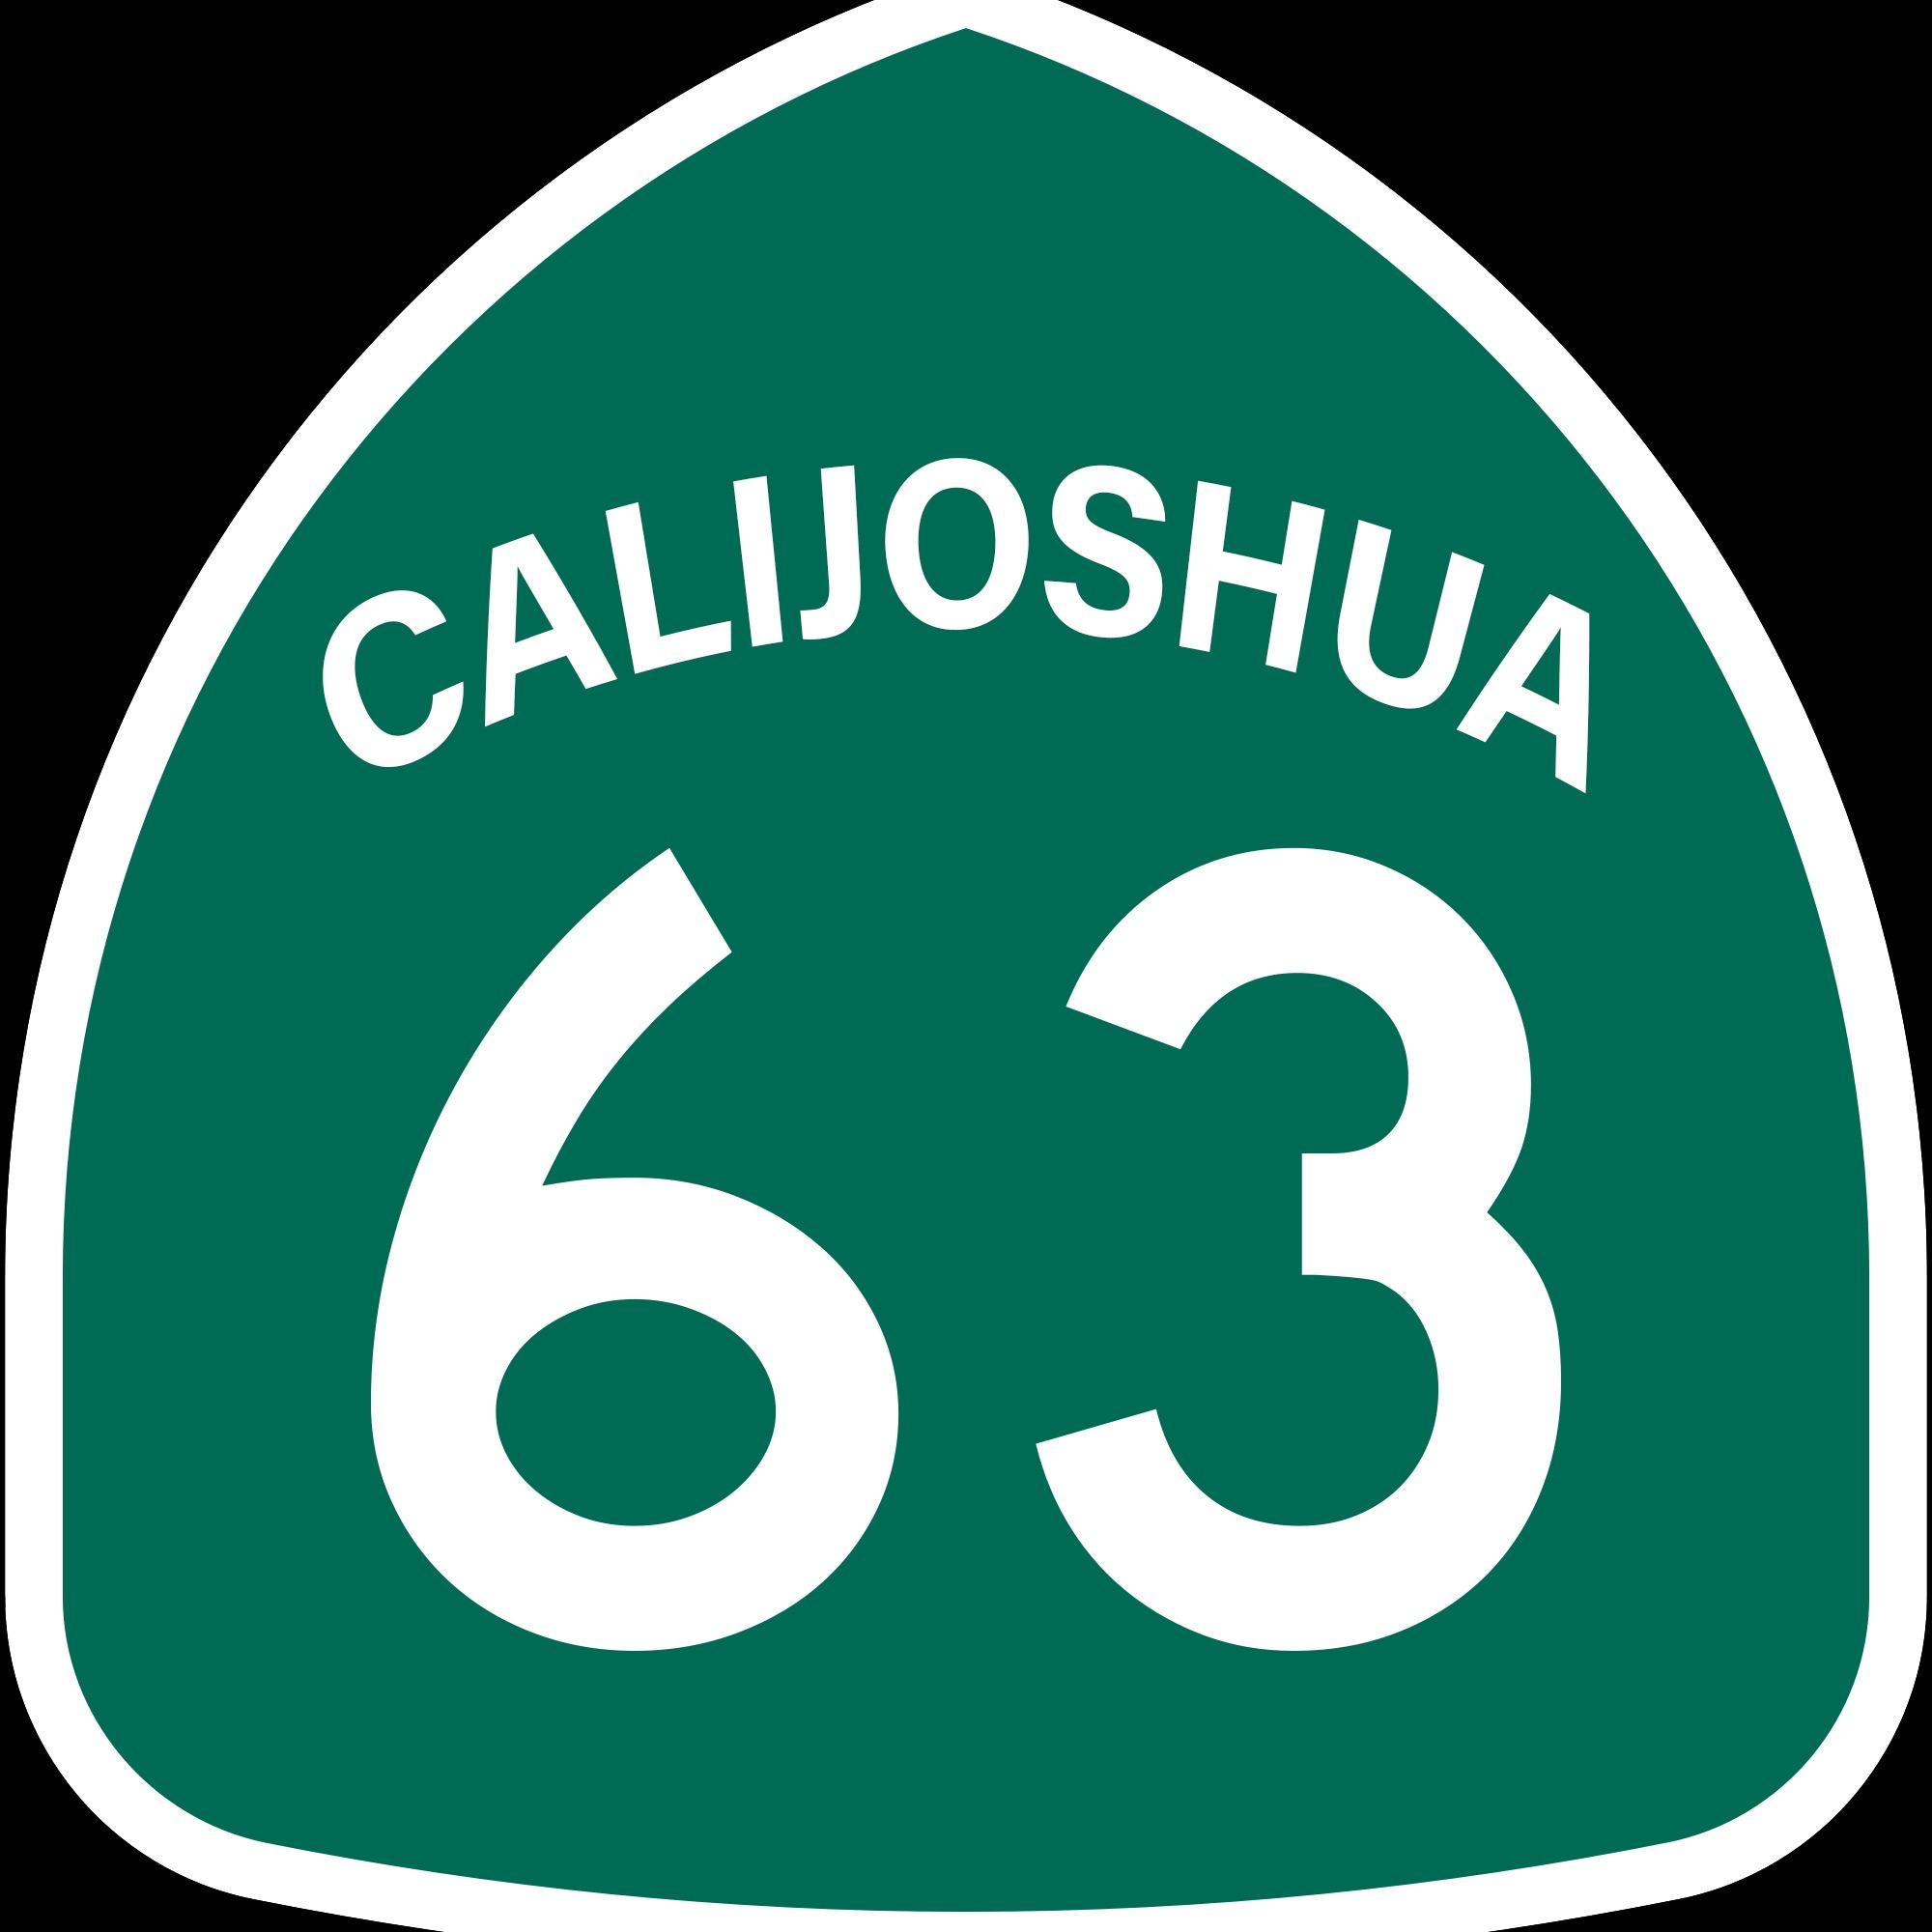 CaliJoshua